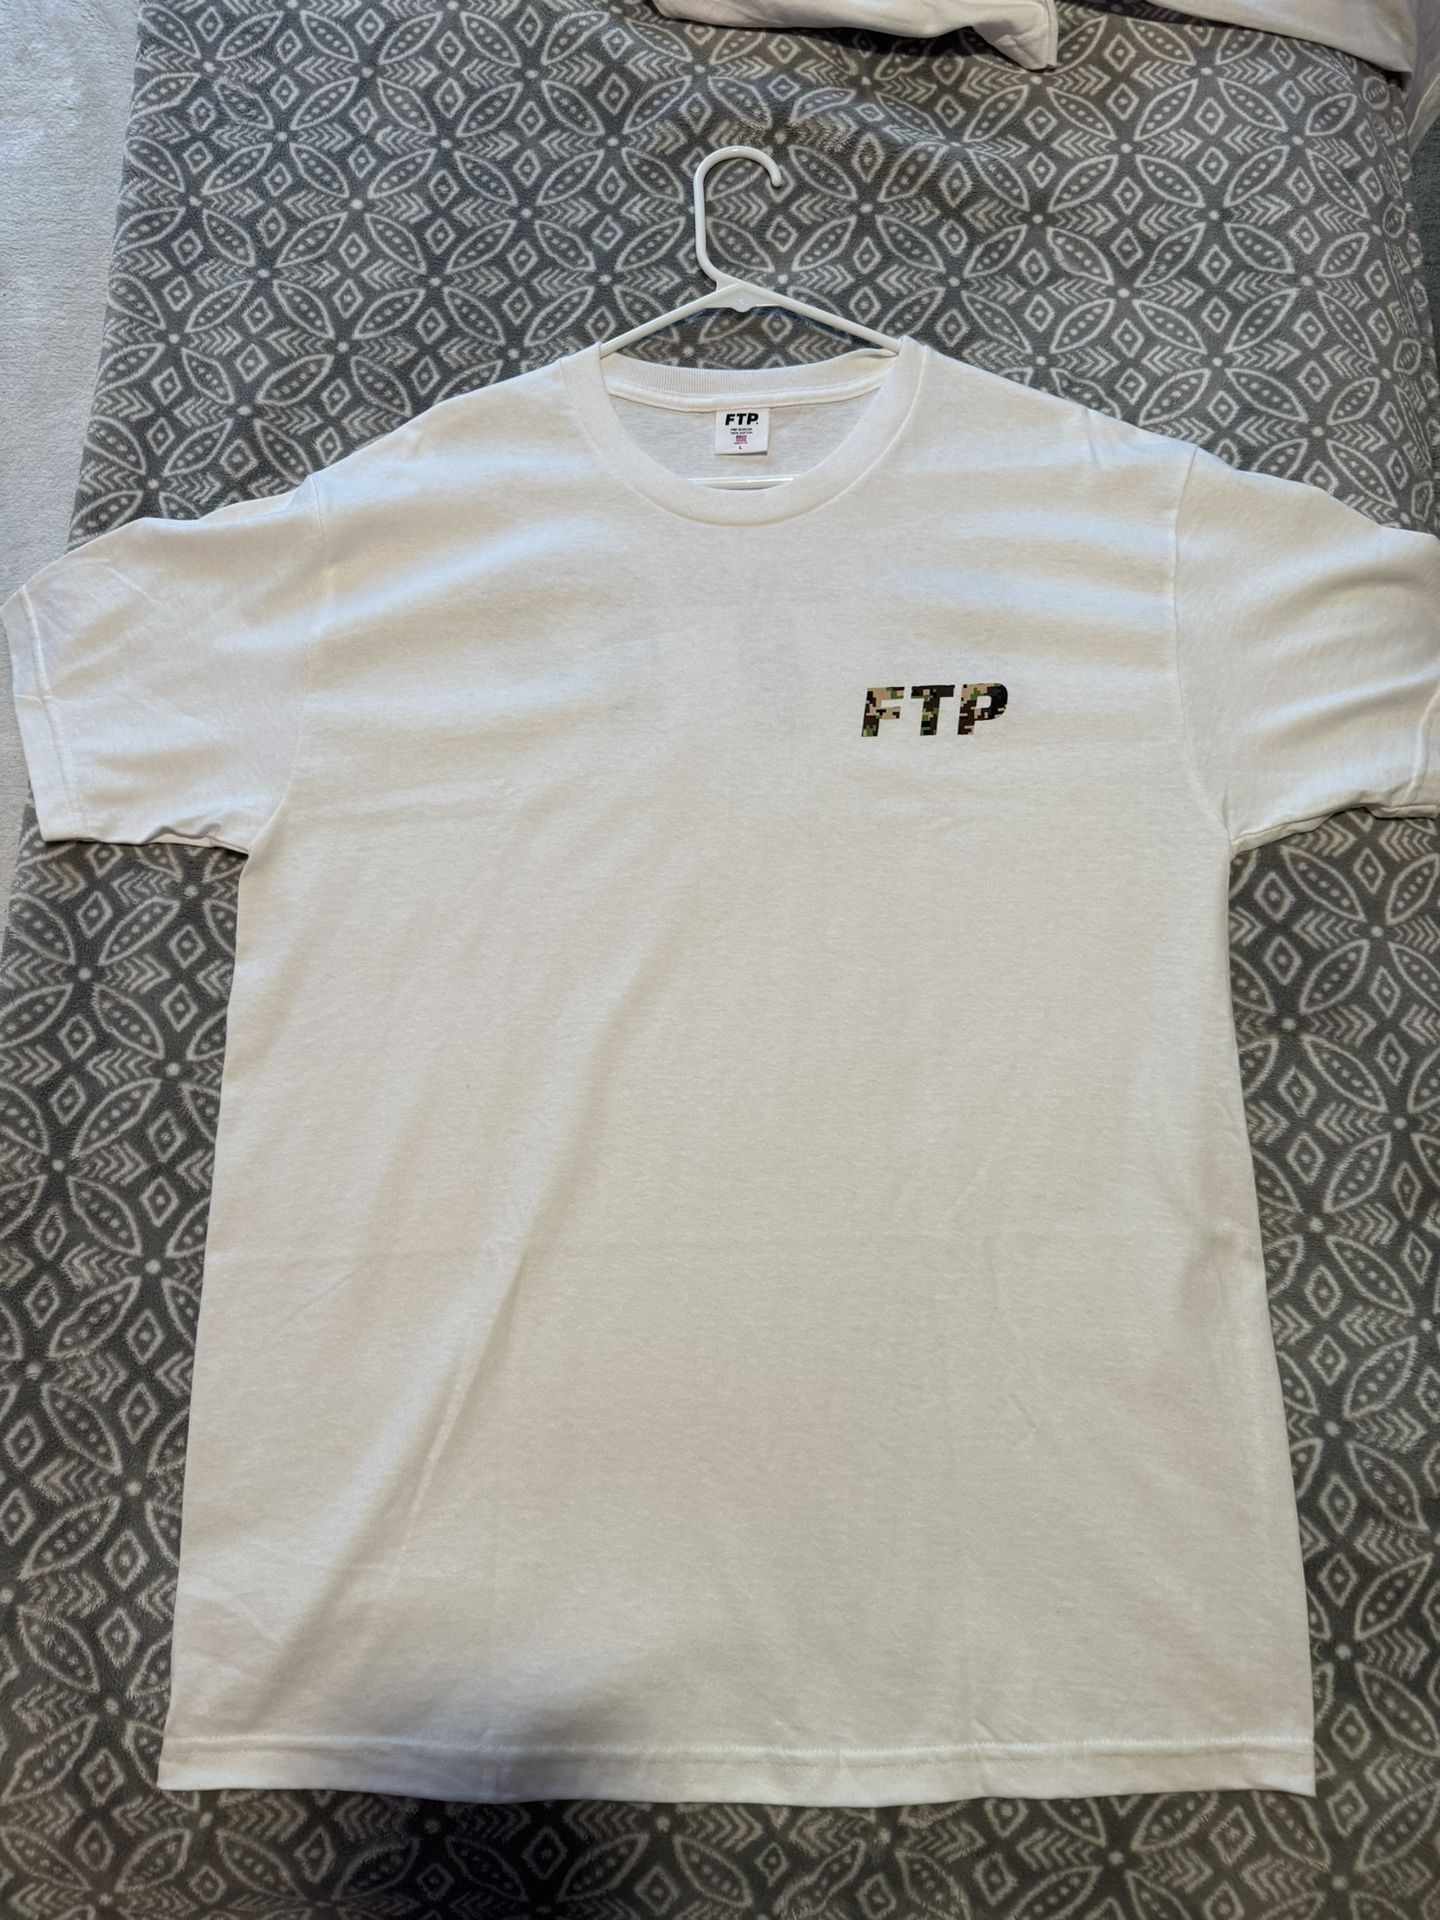 FTP Logo Shirt. Digital Camo